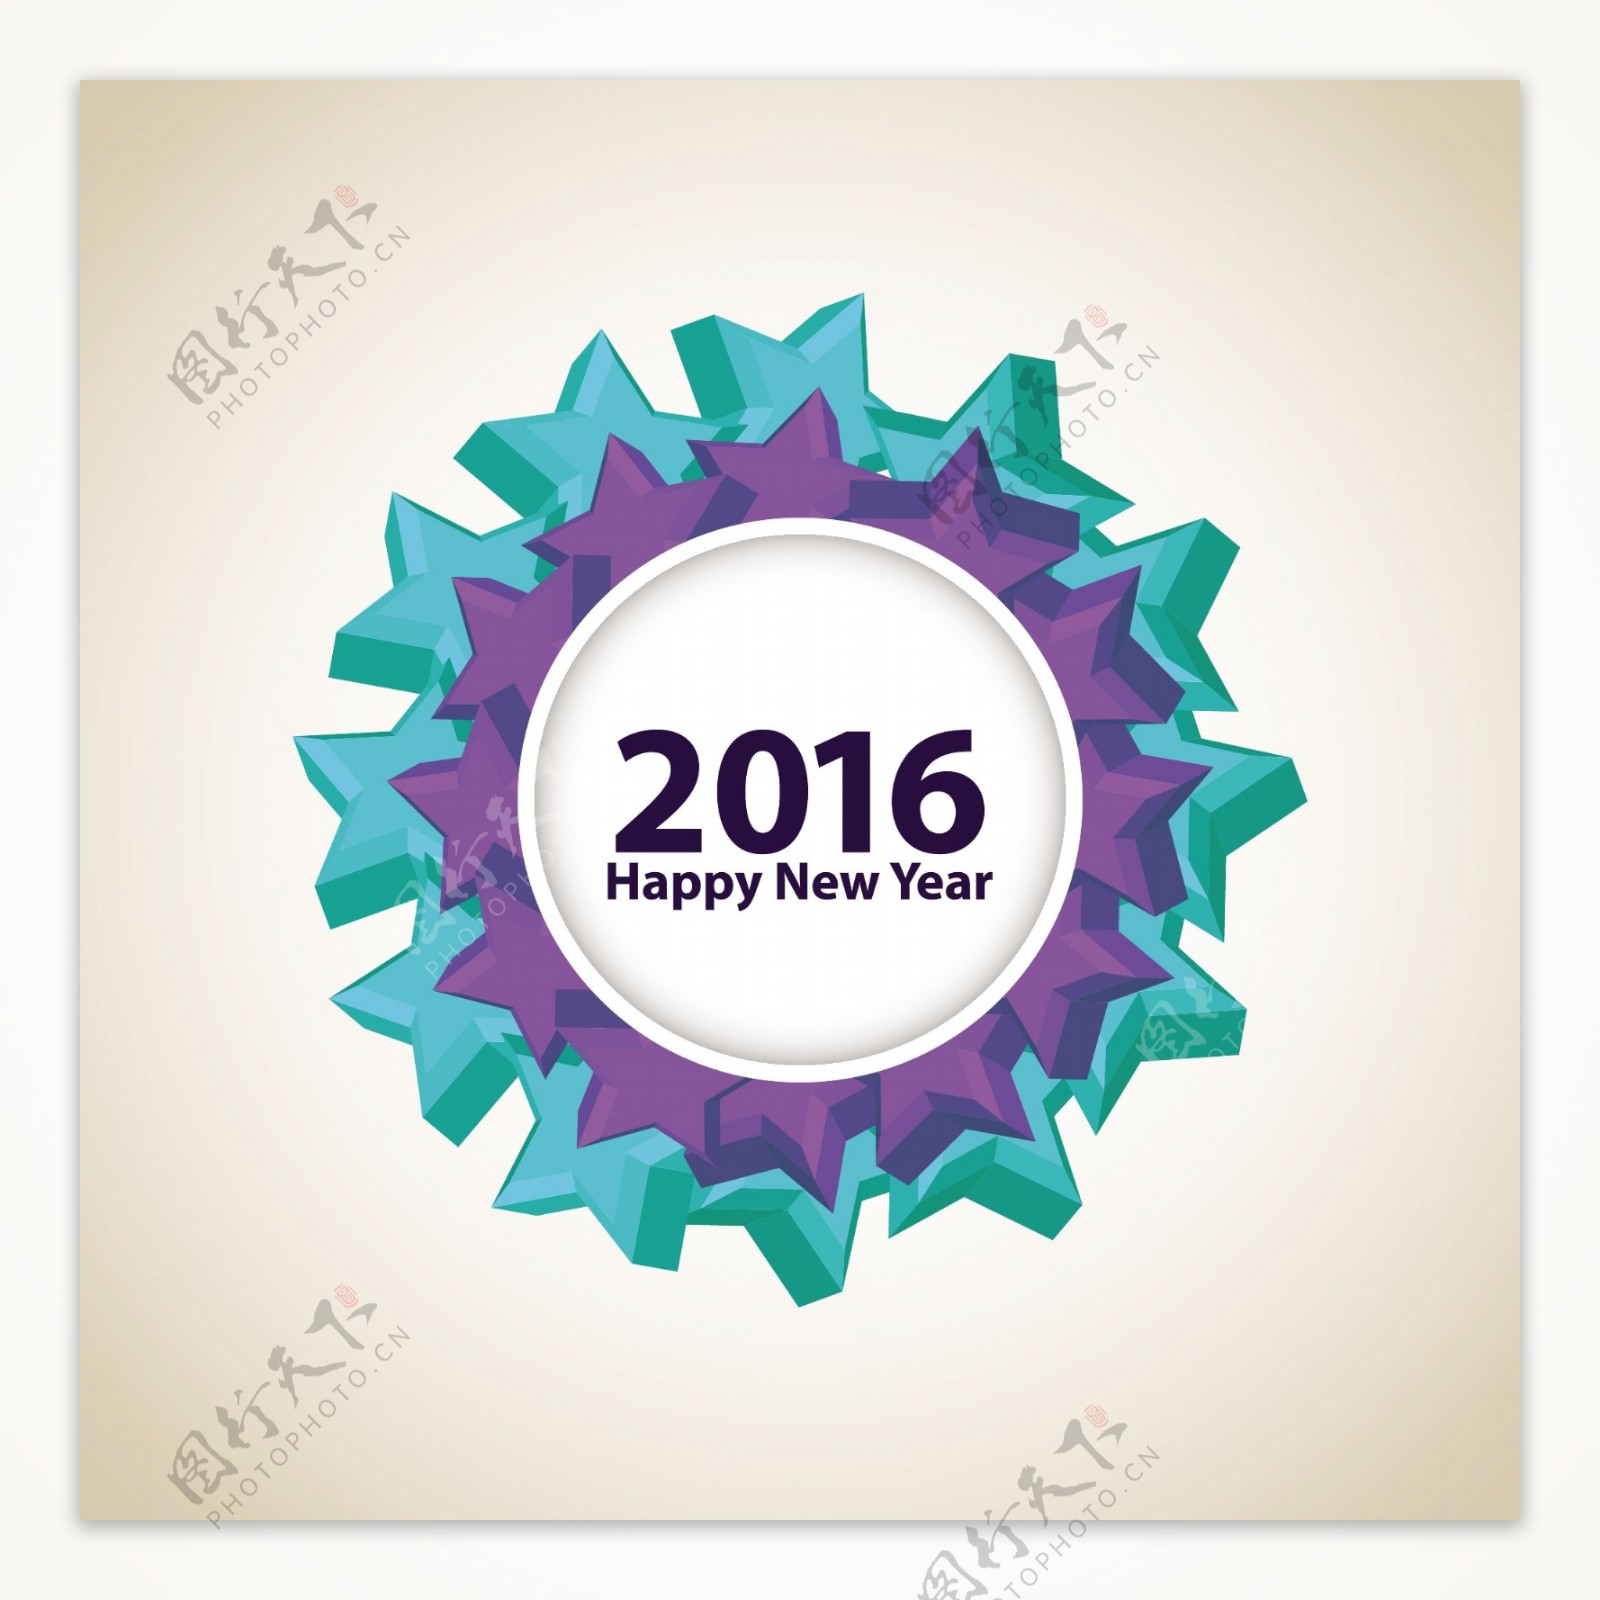 圆环形的2016新年快乐背景